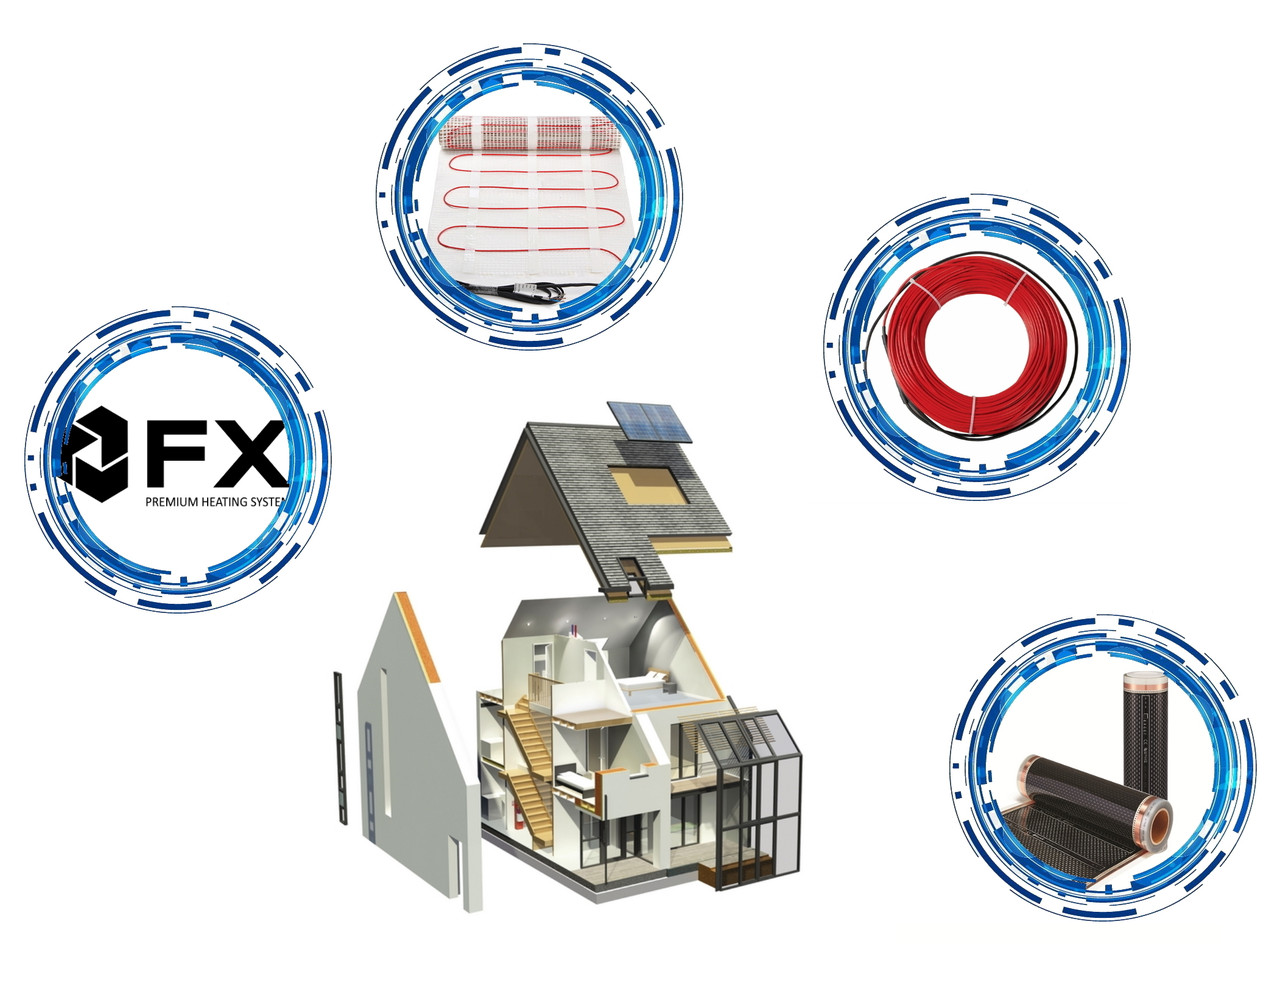 Тепла підлога електрична FX Premium Корея для основного опалення будинку за низькими цінами